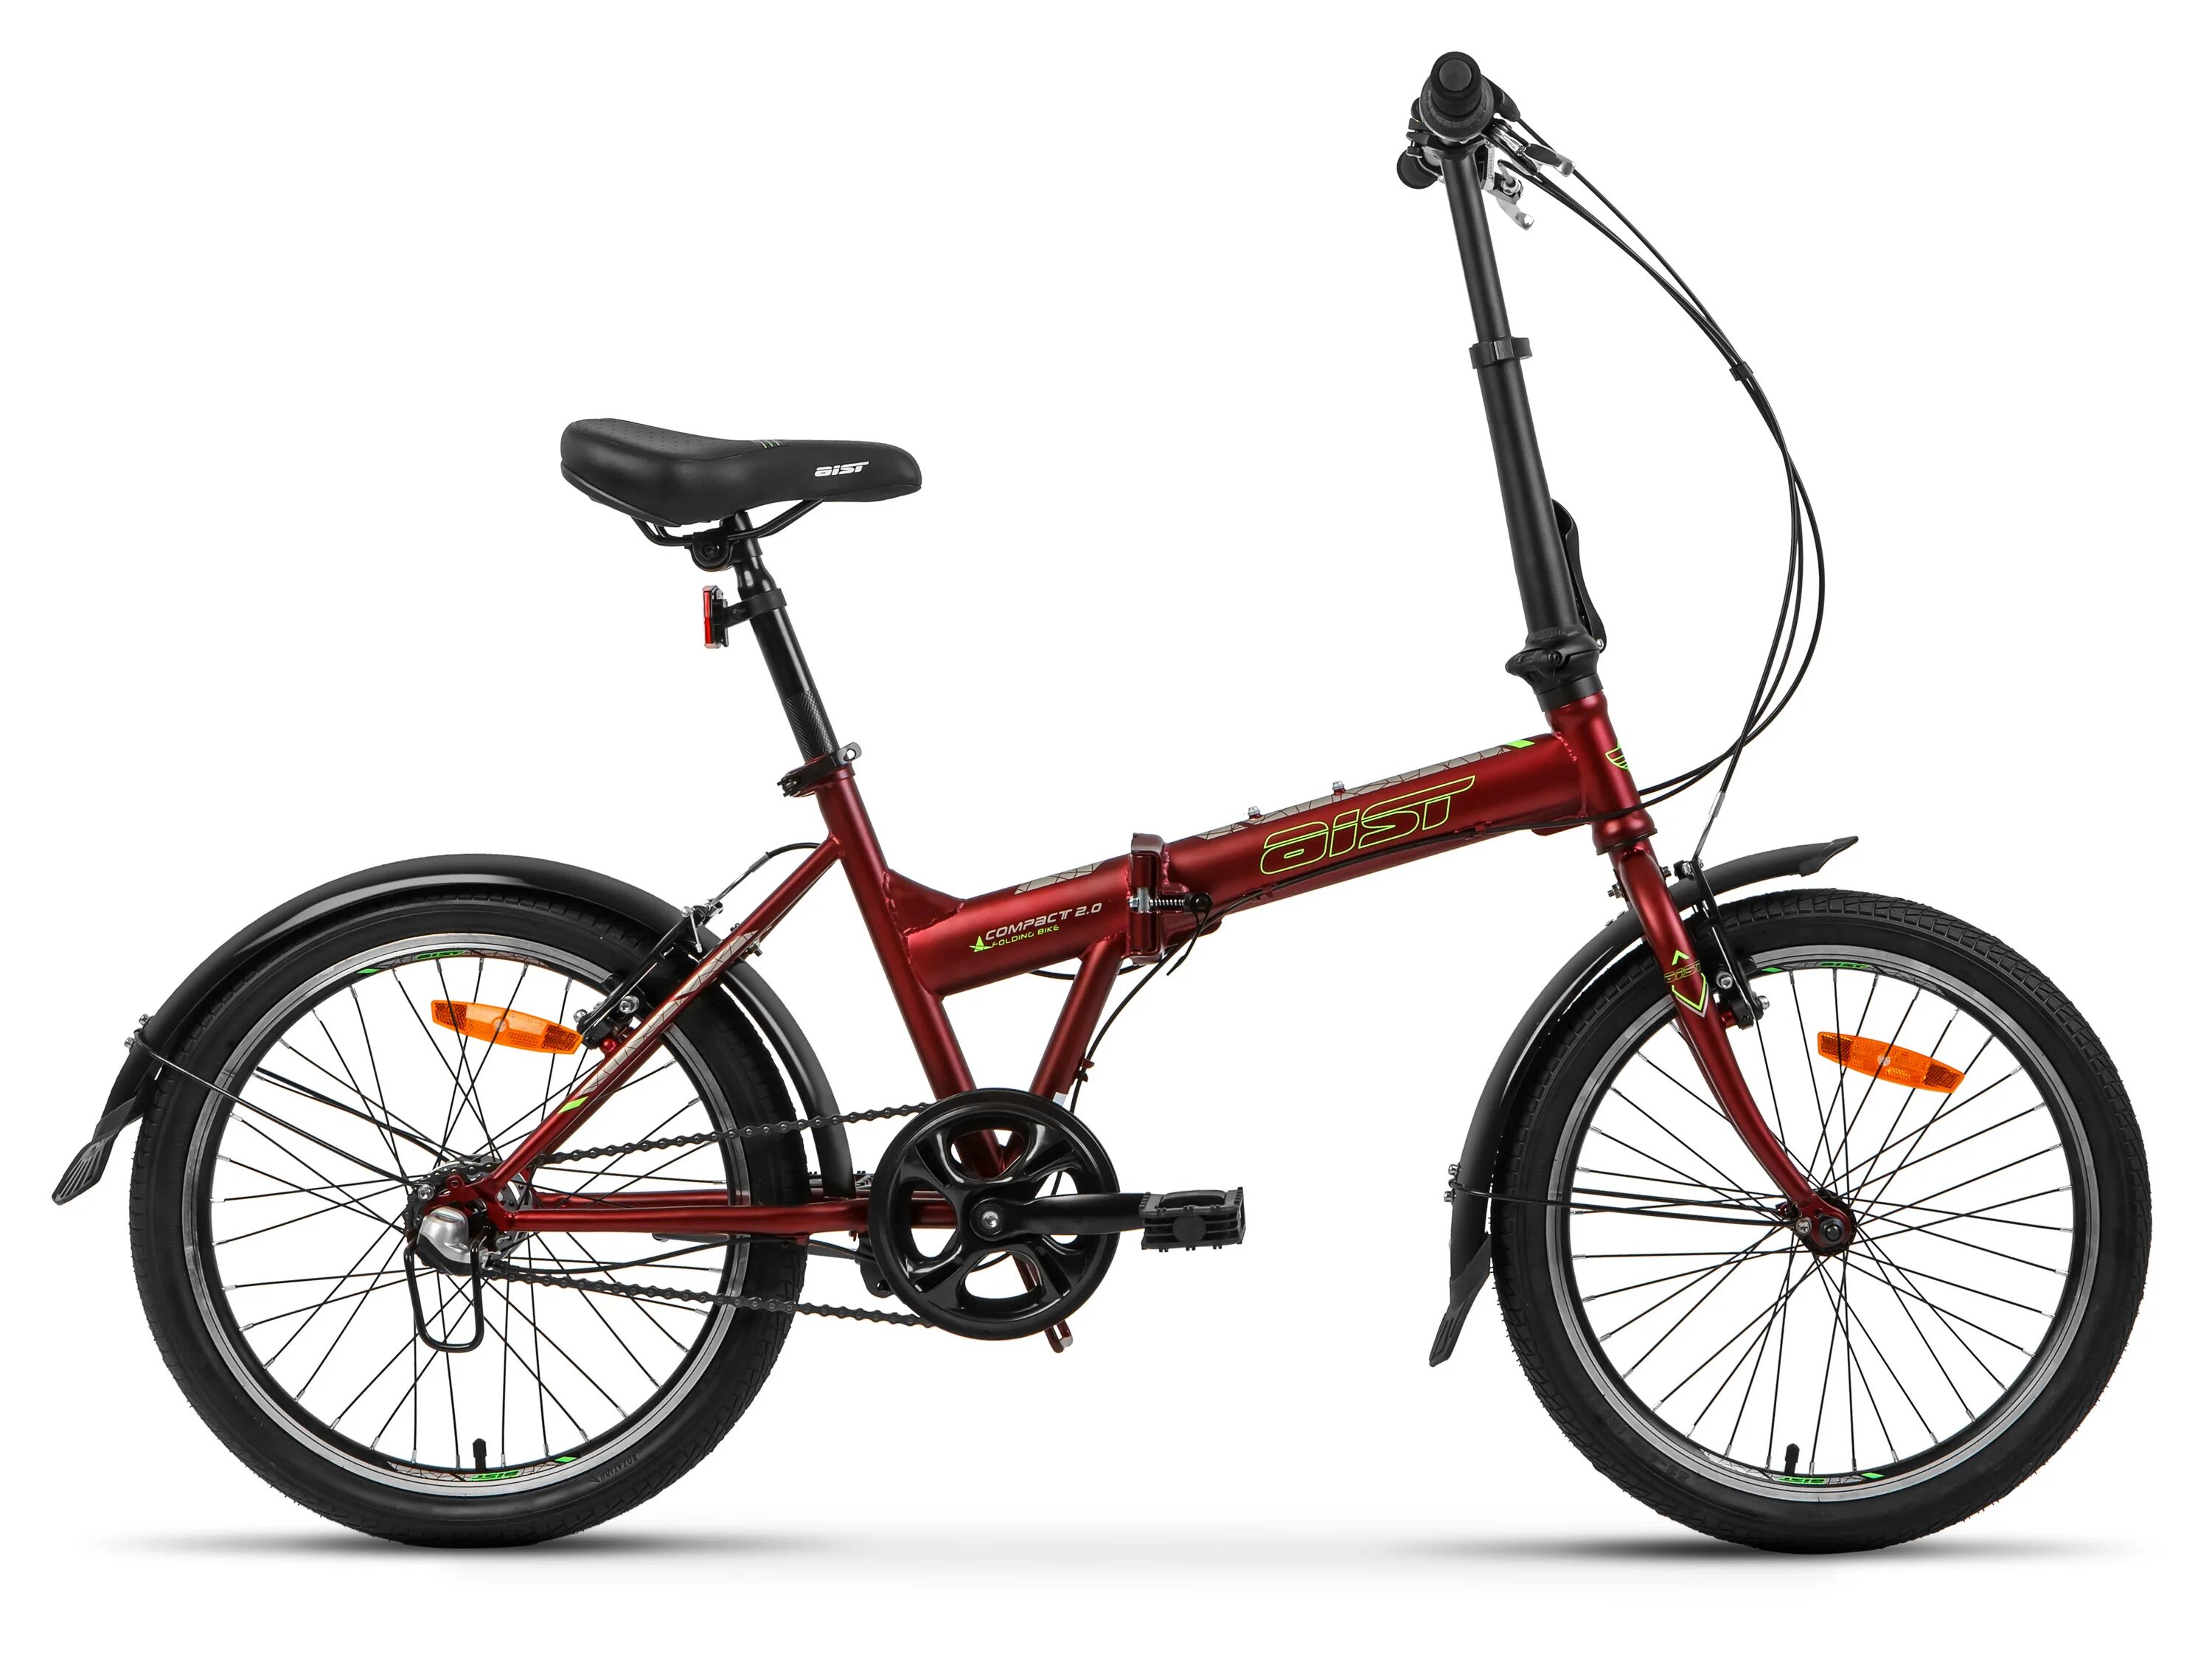 Купить велосипед аист в минске. Aist Compact 2.0. Городской велосипед Аист Compact 2.0. Складной велосипед Аист Compact 1.0, 20, 2021. Aist Compact 2.0 2021.